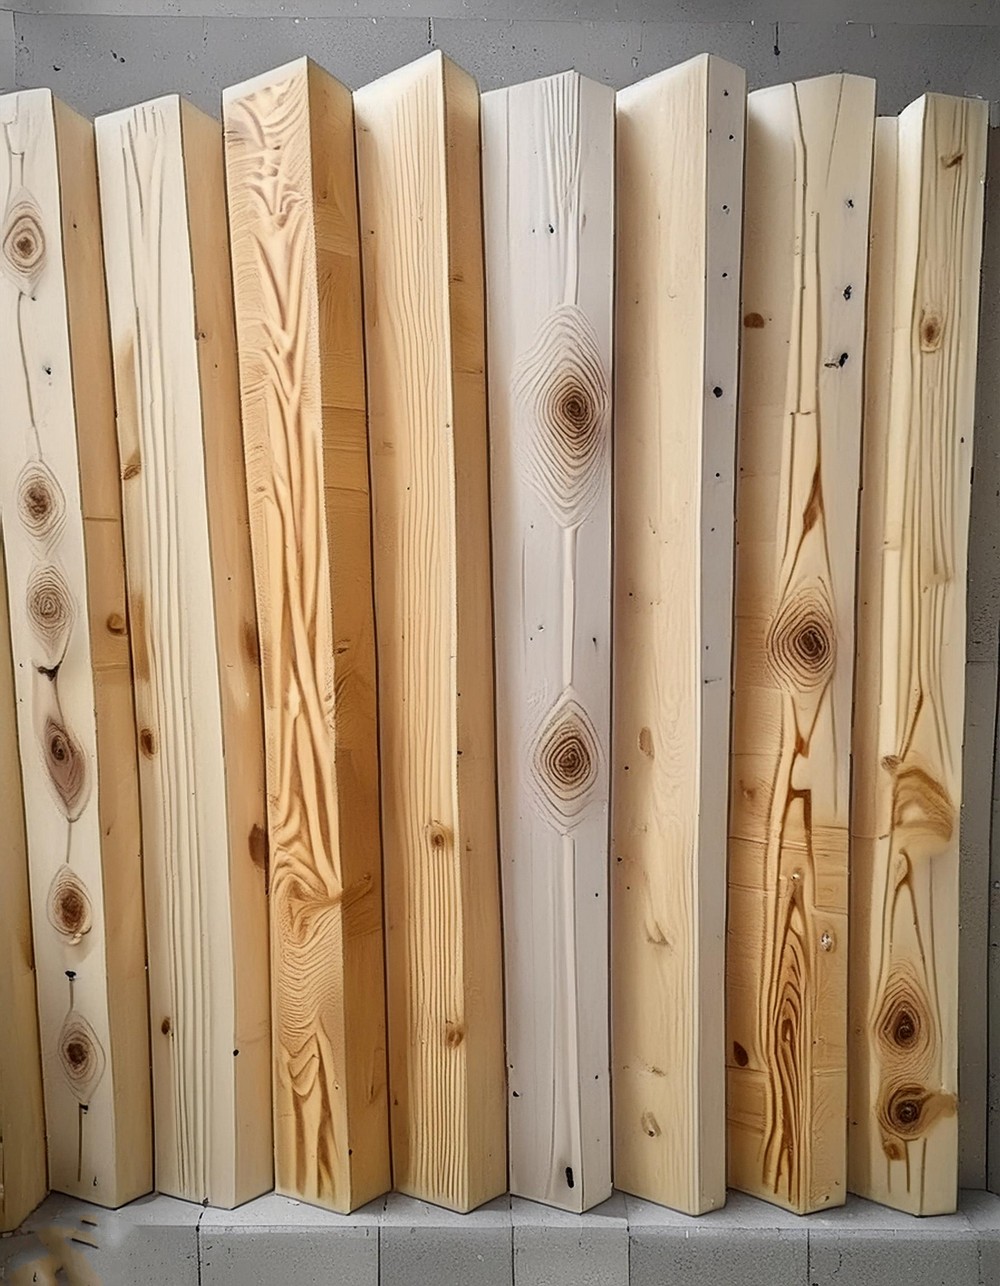 Wood Bars